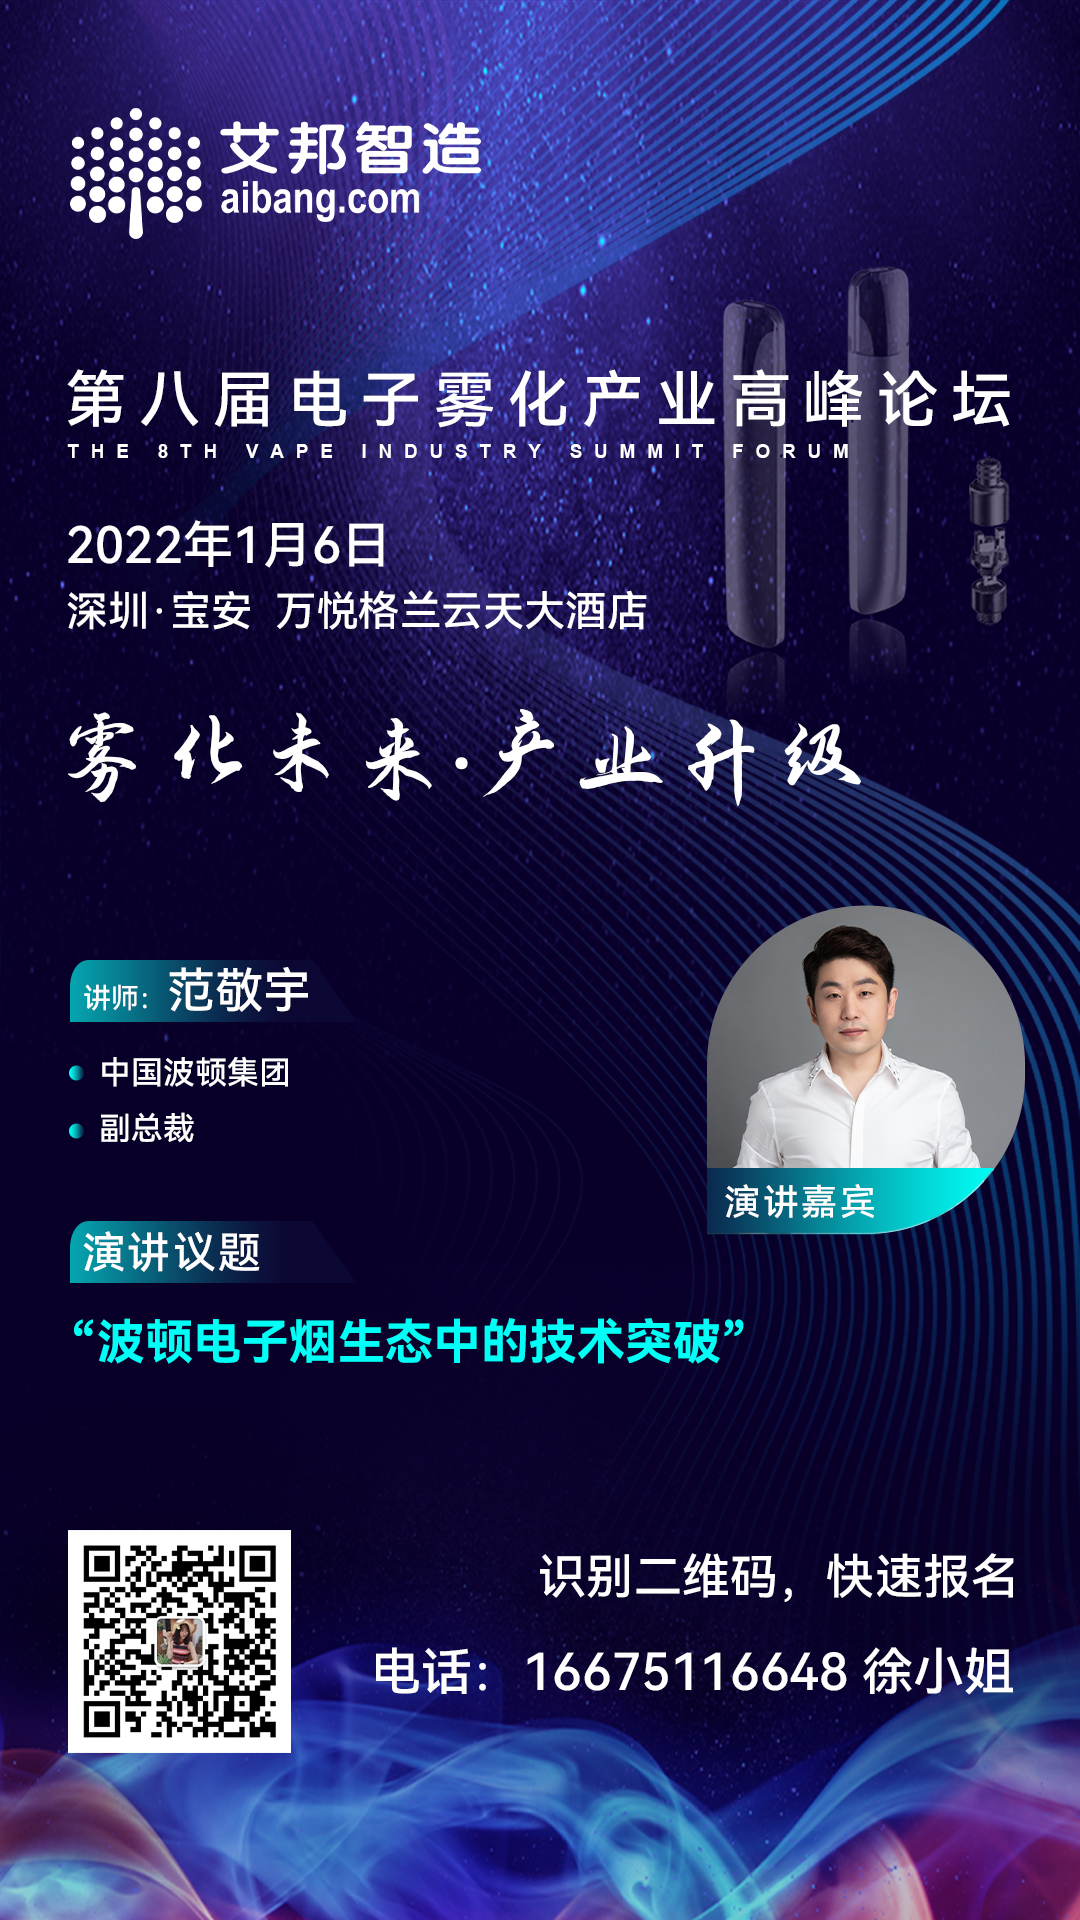 中国波顿集团将出席第八届电子雾化产业高峰论坛并做主题演讲（1月6日·深圳）